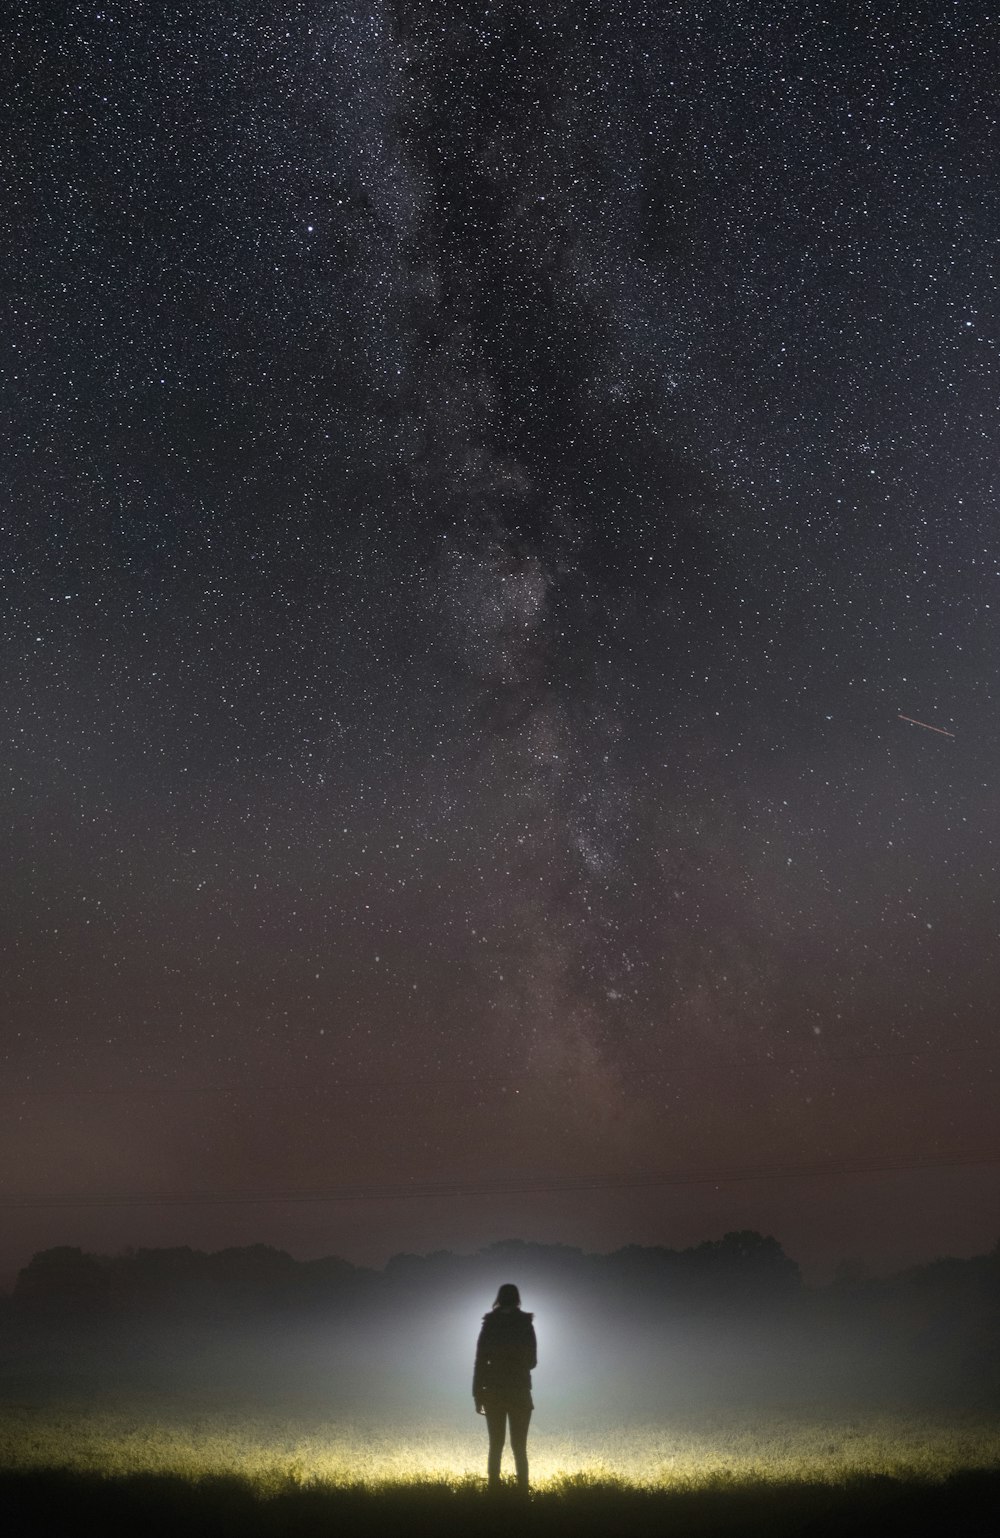 Un homme debout dans un champ sous un ciel nocturne rempli d’étoiles